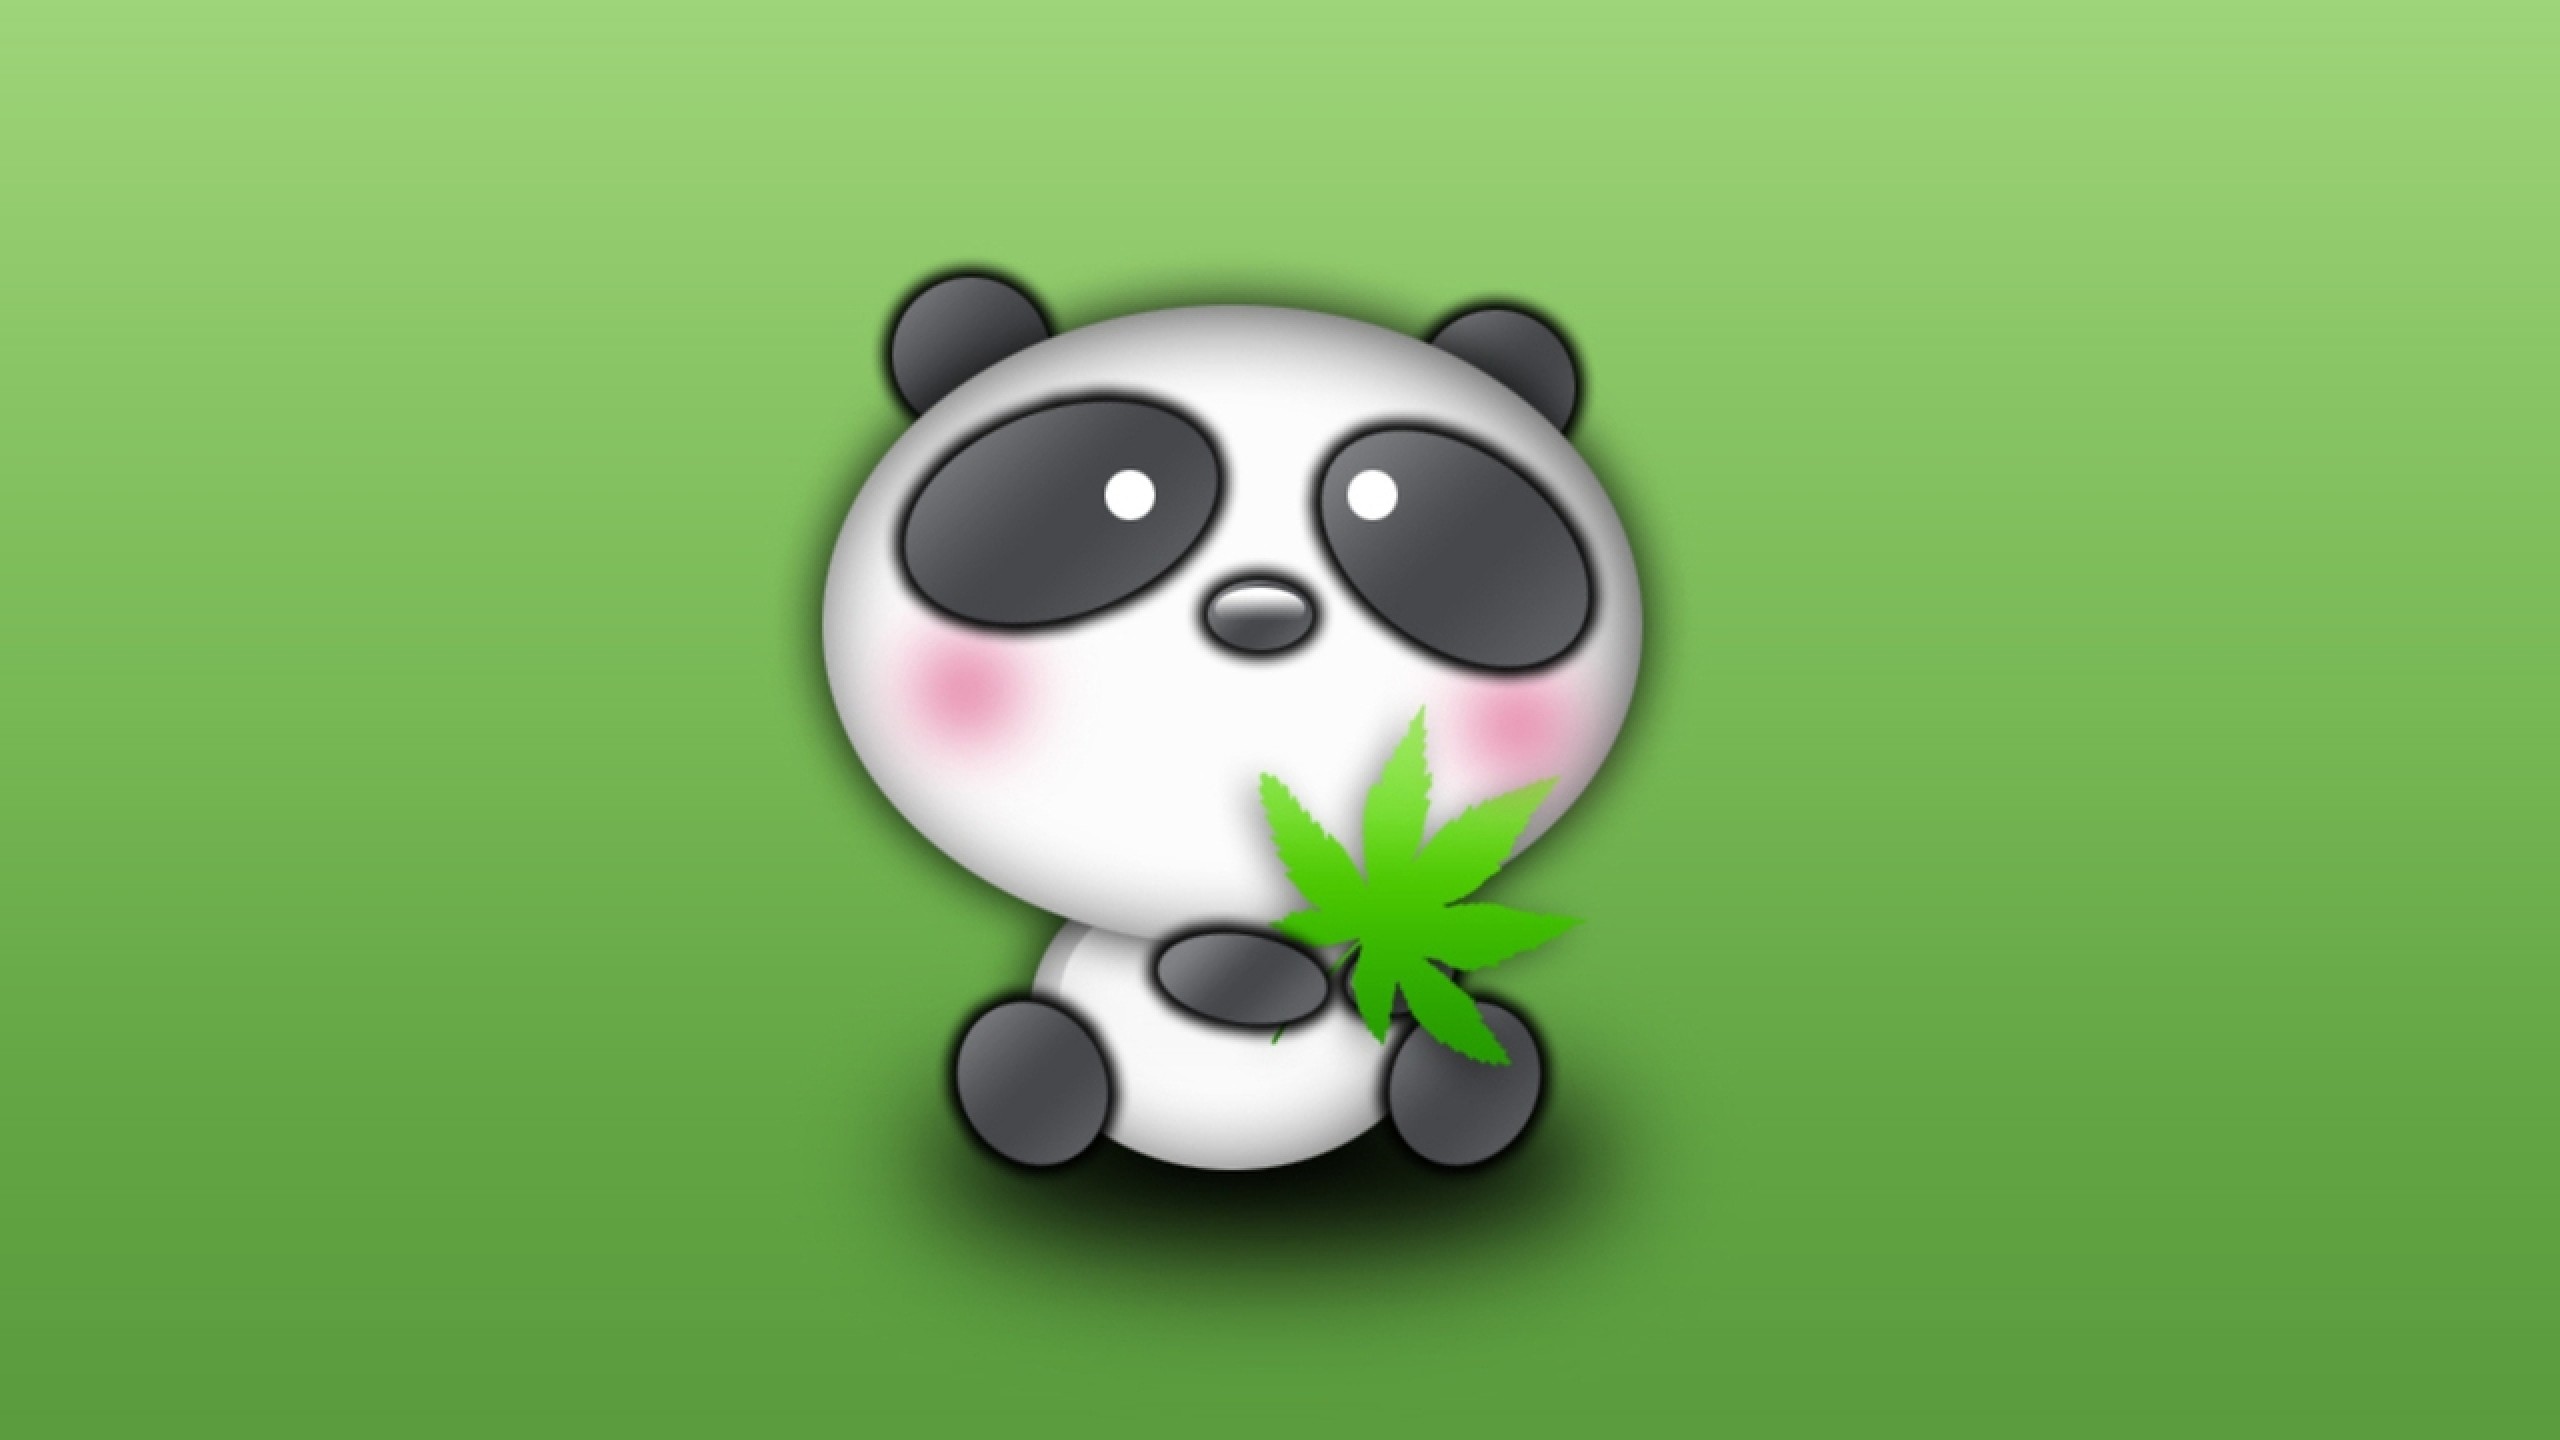 Free download Cute Panda Cartoon Desktop Wallpaper Cute amp Funny Things  [2560x1440] for your Desktop, Mobile & Tablet | Explore 70+ Cartoon Panda  Wallpaper | Panda Wallpaper, Panda Cartoon Wallpaper, Panda Bear Wallpaper